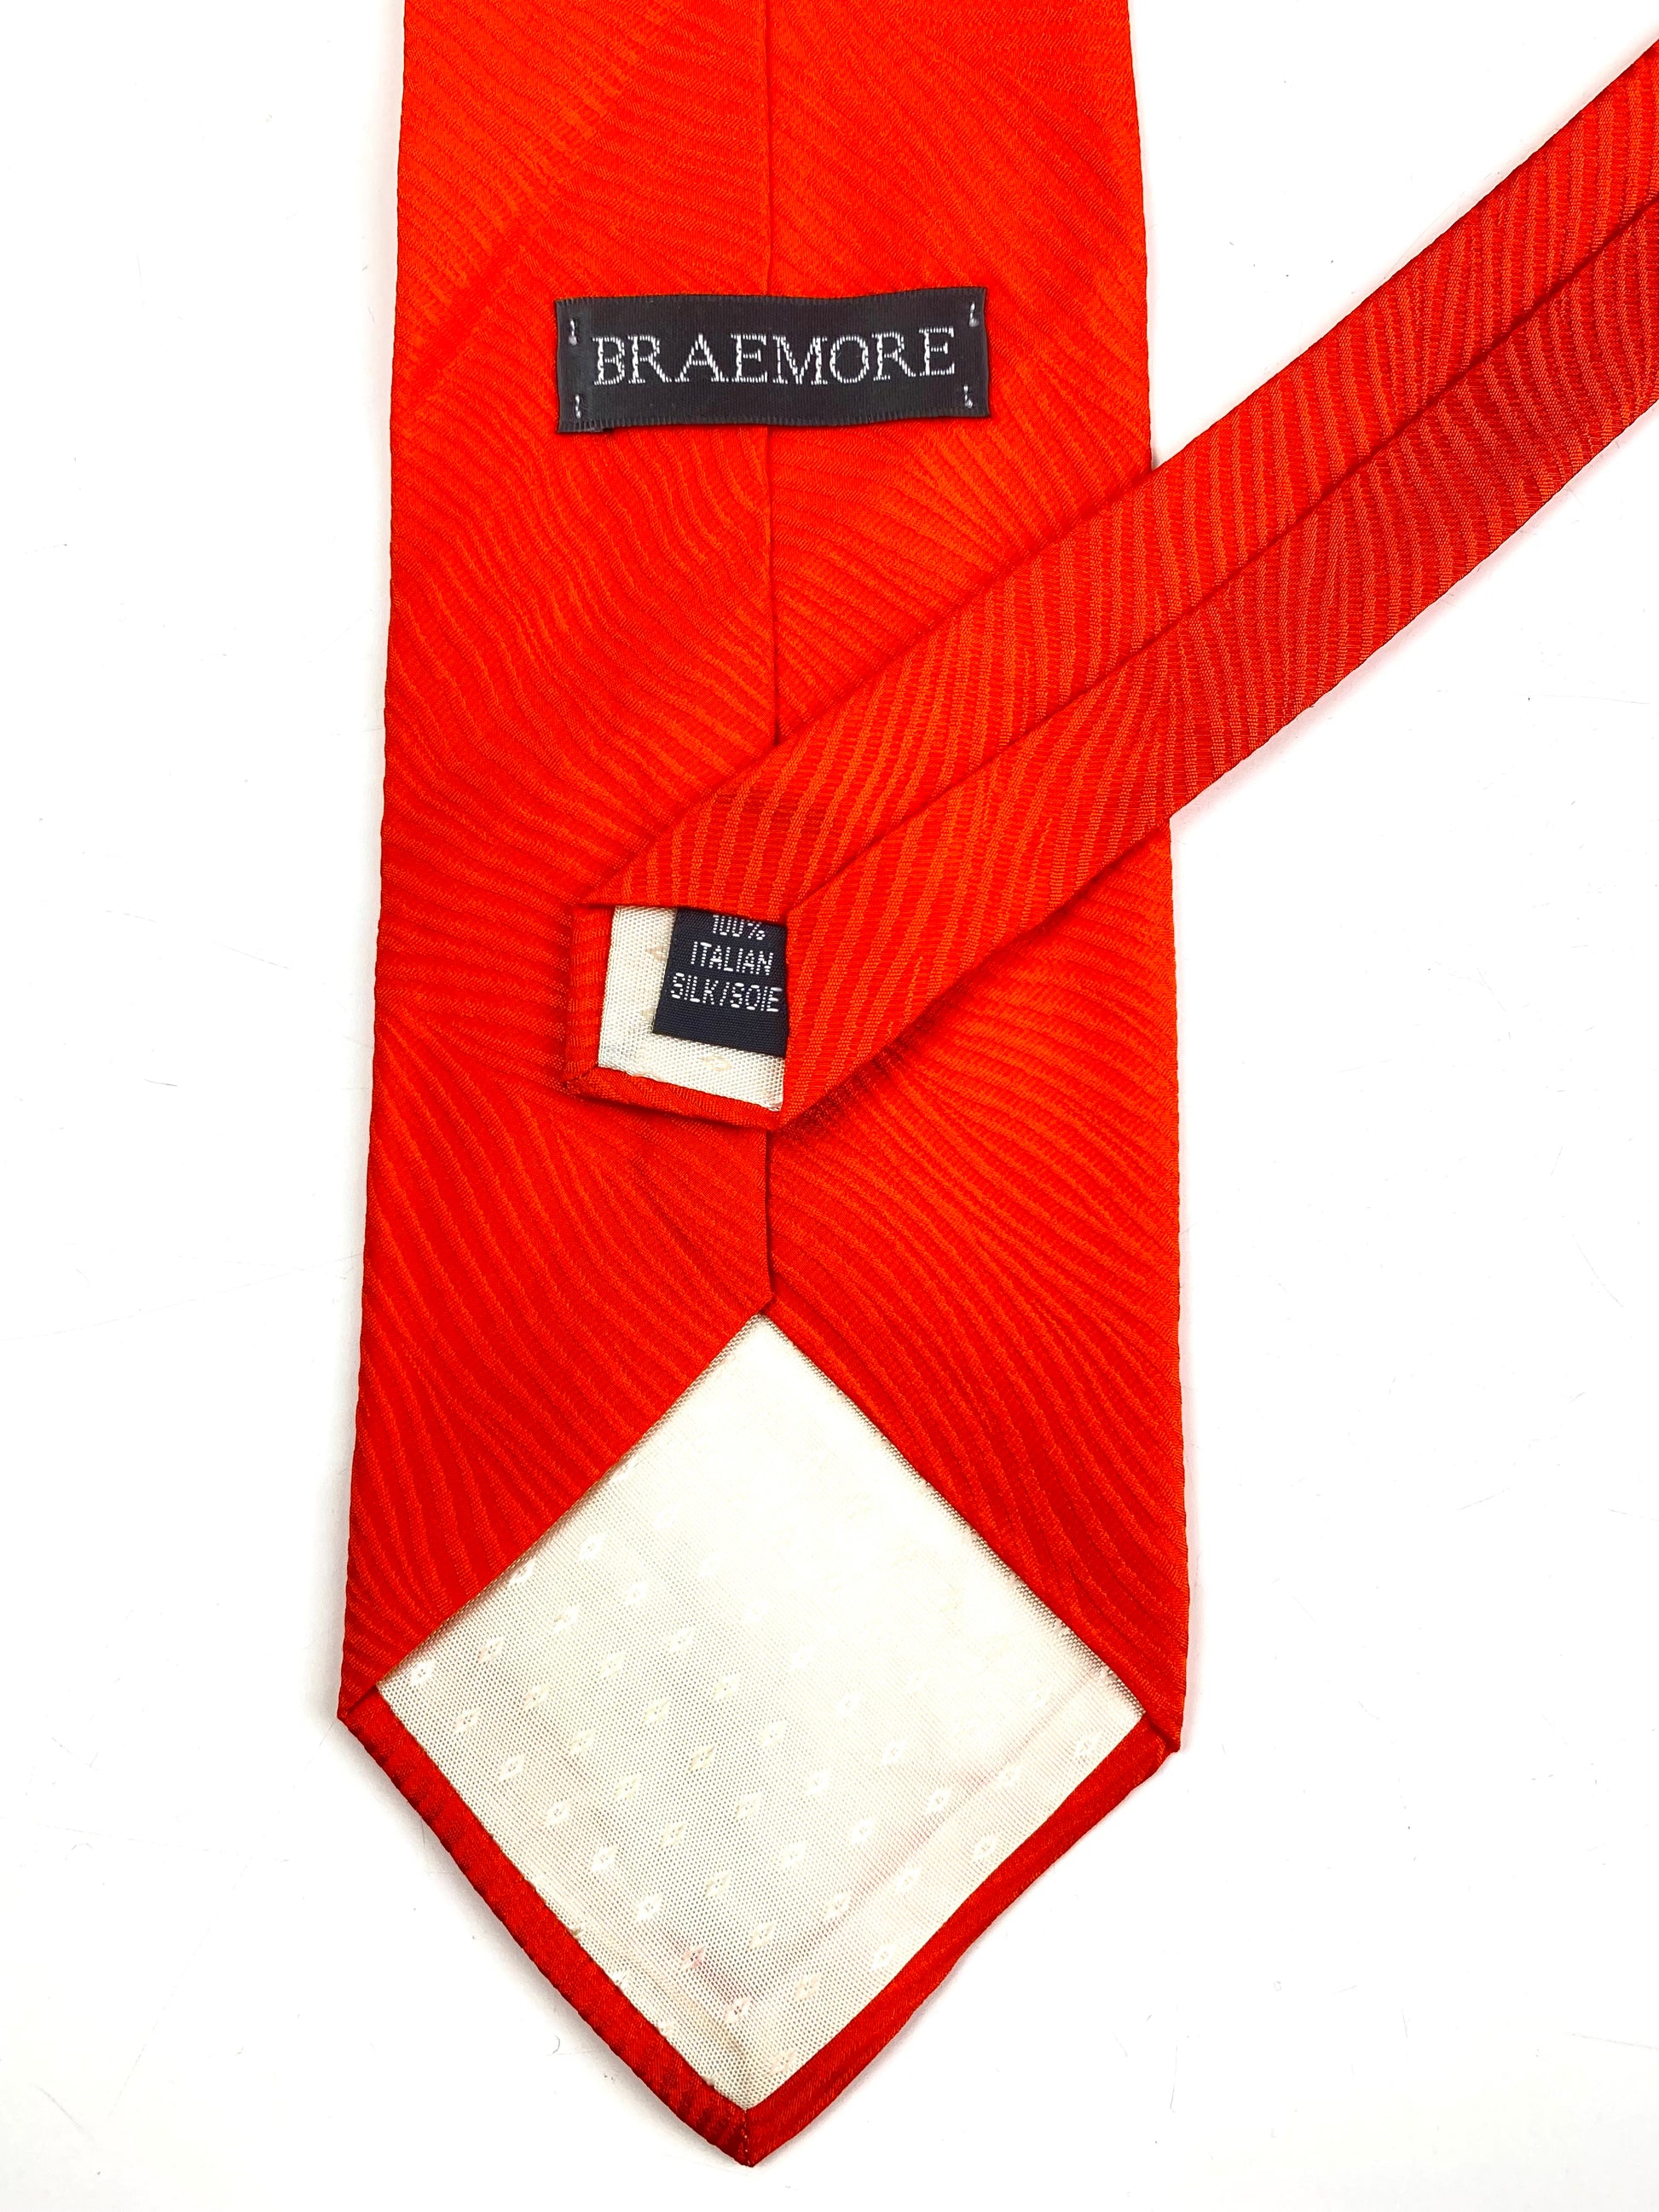 Back and labels of: 90s Deadstock Silk Necktie, Men's Vintage Solid Orange Textured Tie, NOS